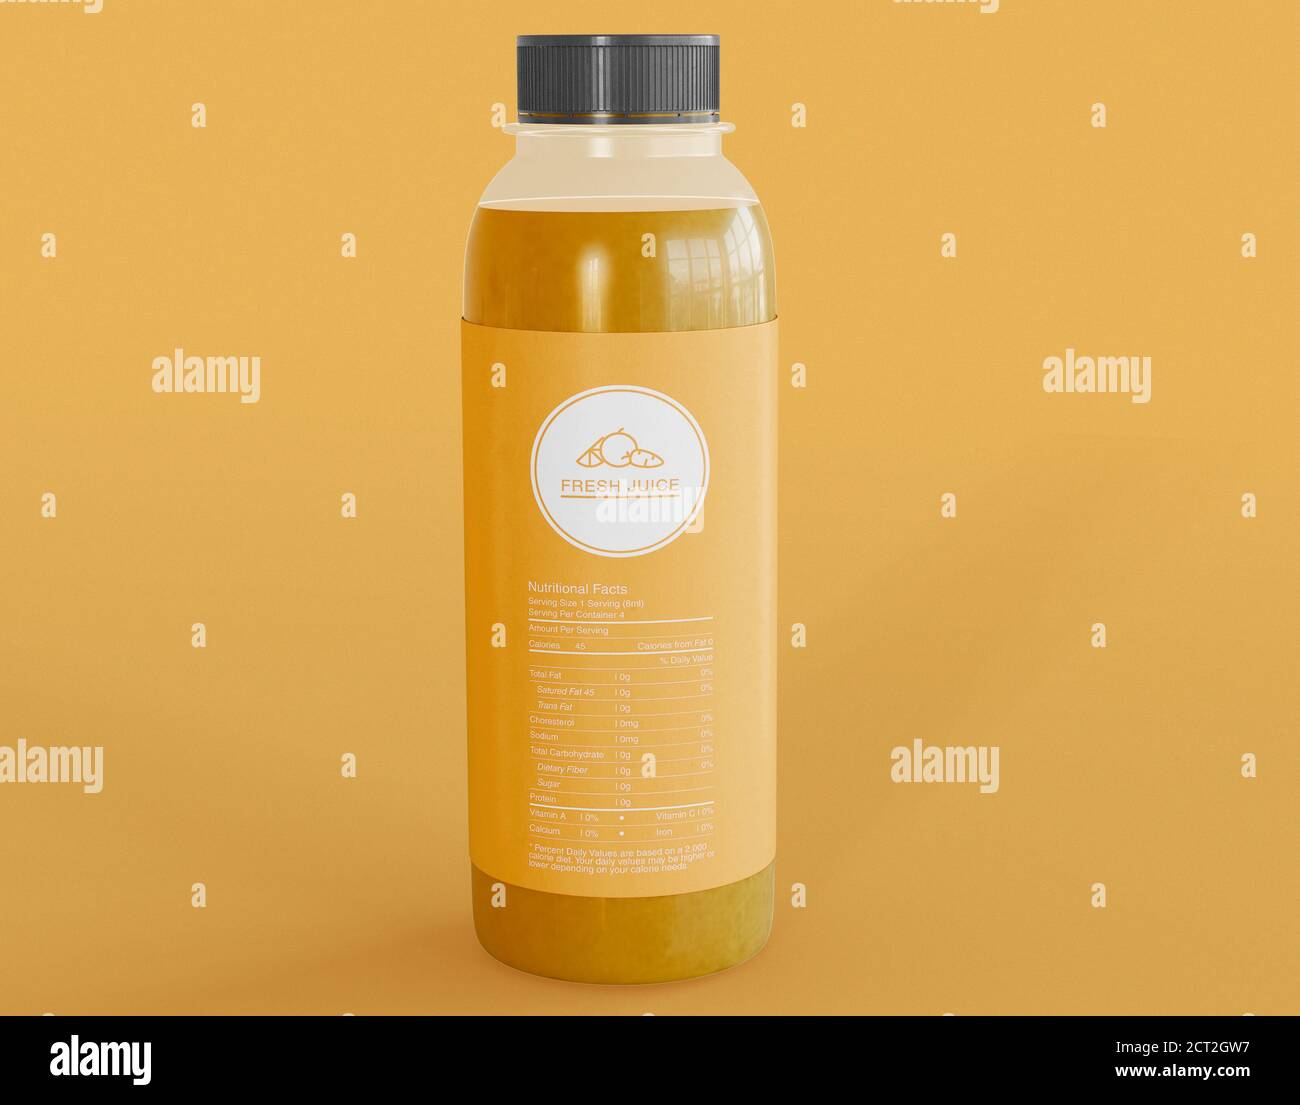 Illustrazione 3D. Bottiglia di succo fresco su sfondo giallo isolato. Bevande naturali e rinfrescanti. Concetto di packaging e branding. Foto Stock